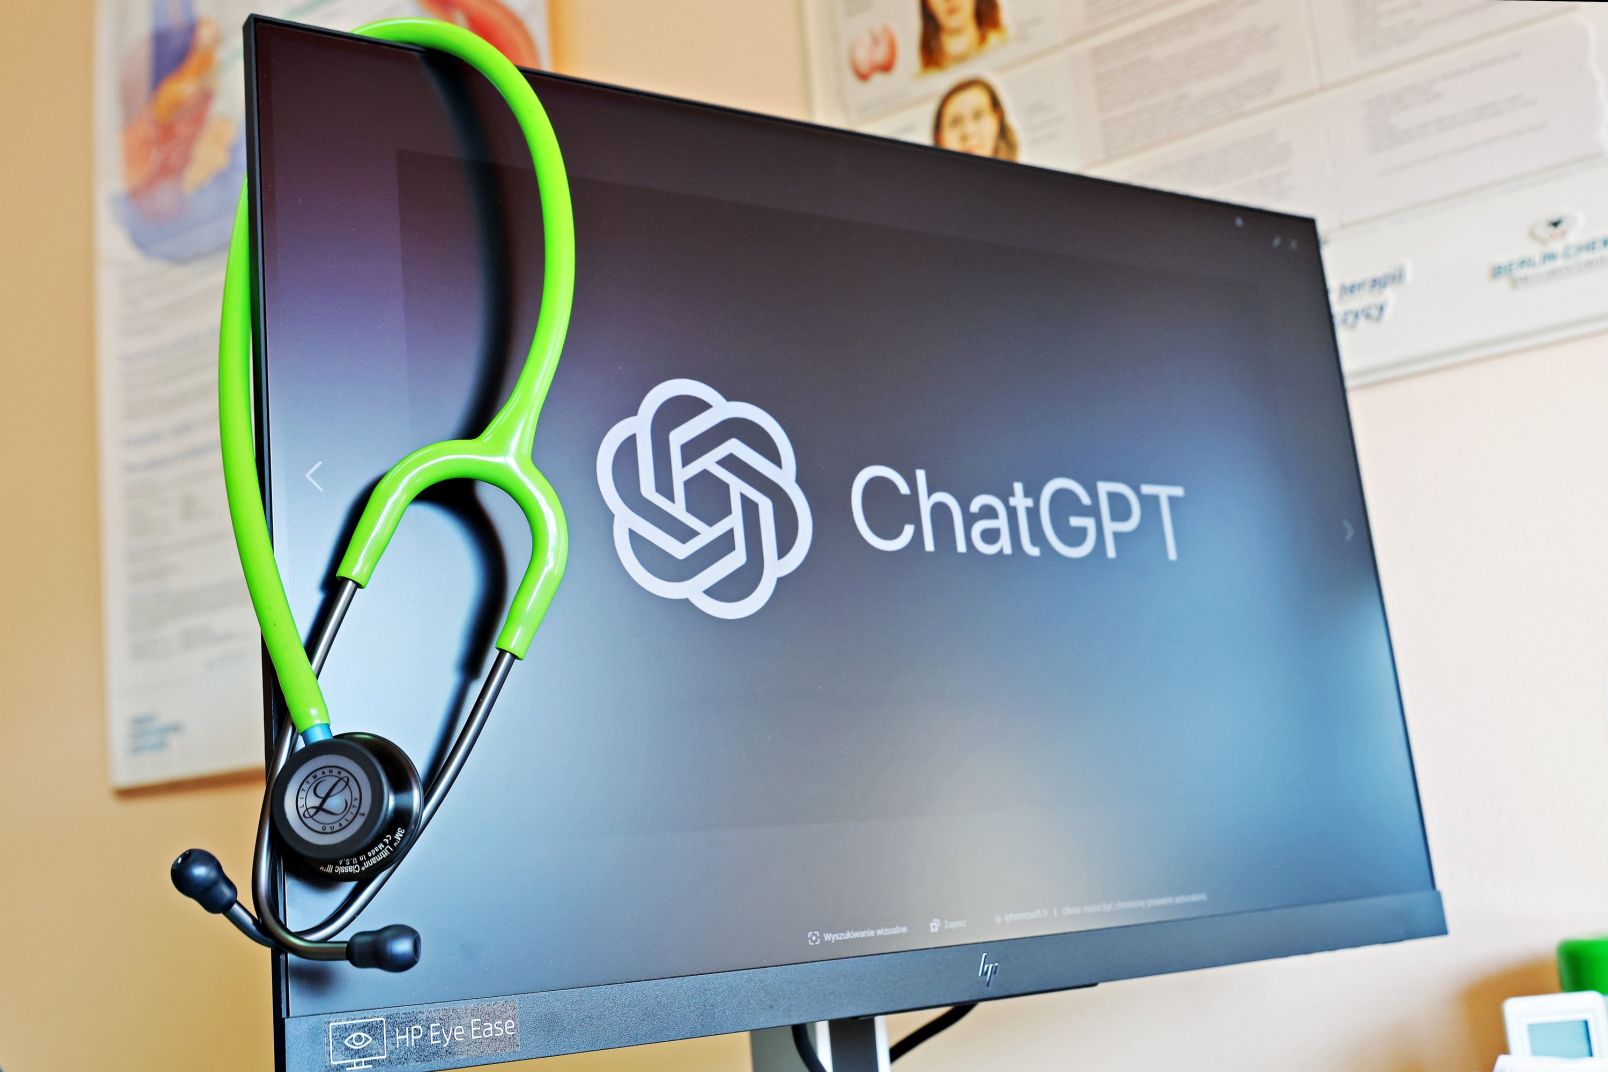 Monitor z napisem ChatGPT i przewieszonym przez niego zielonym stetoskopem